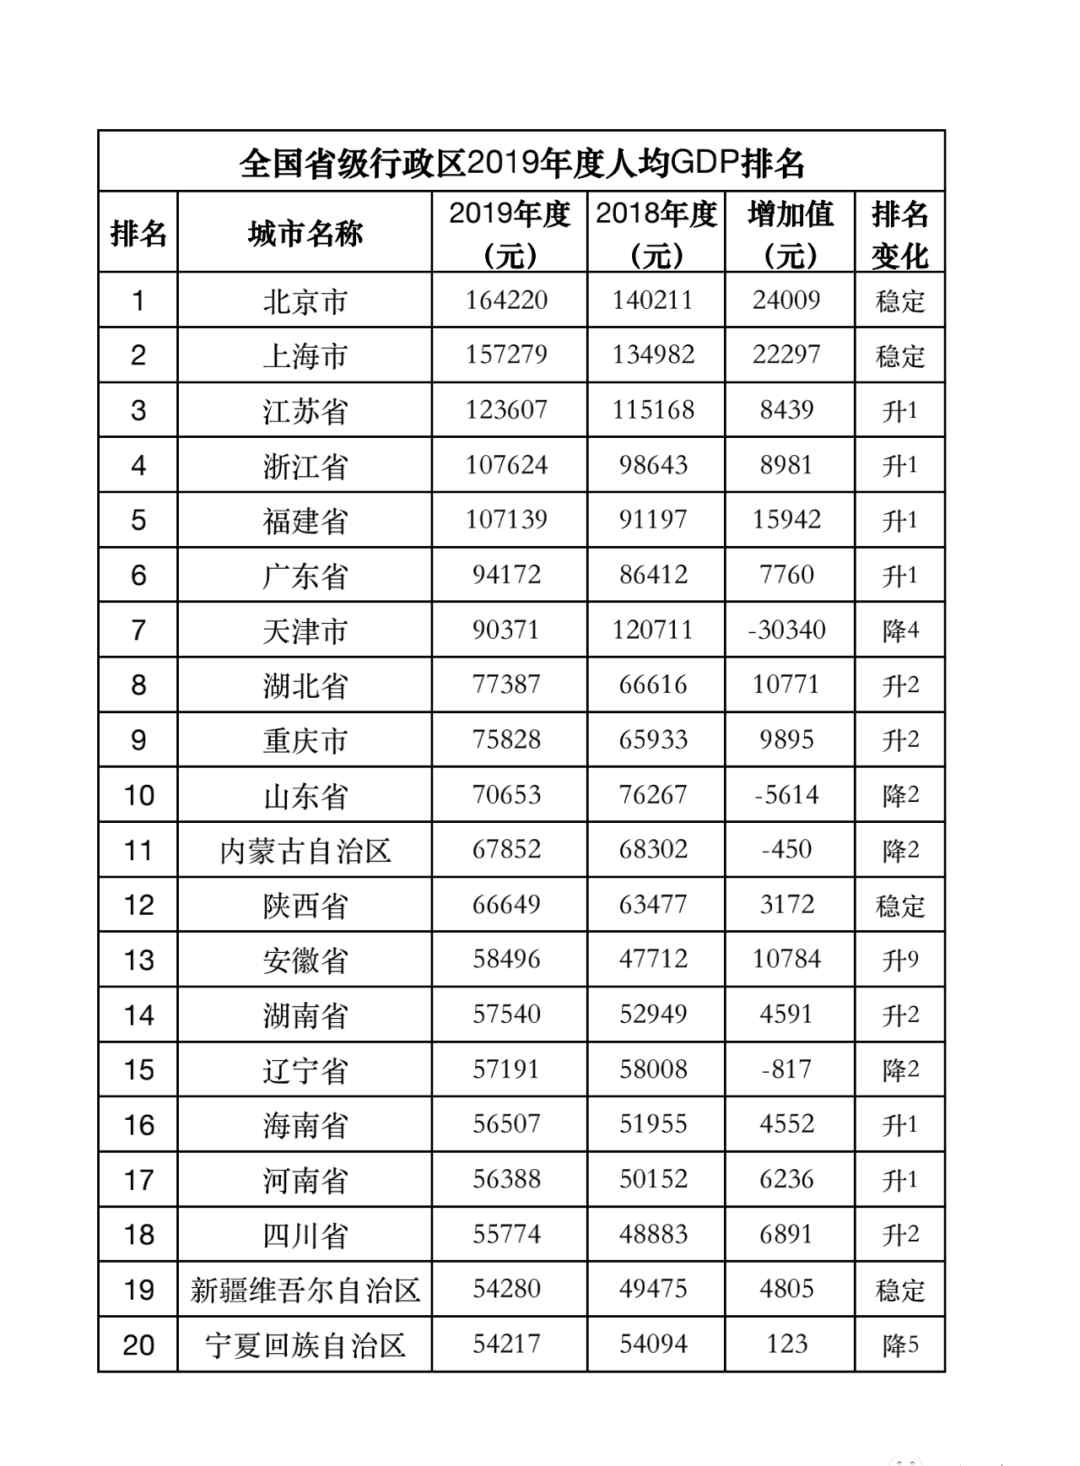 2019年人均gdp 北京市2019年人均GDP超16万元居全国第一 广东第六